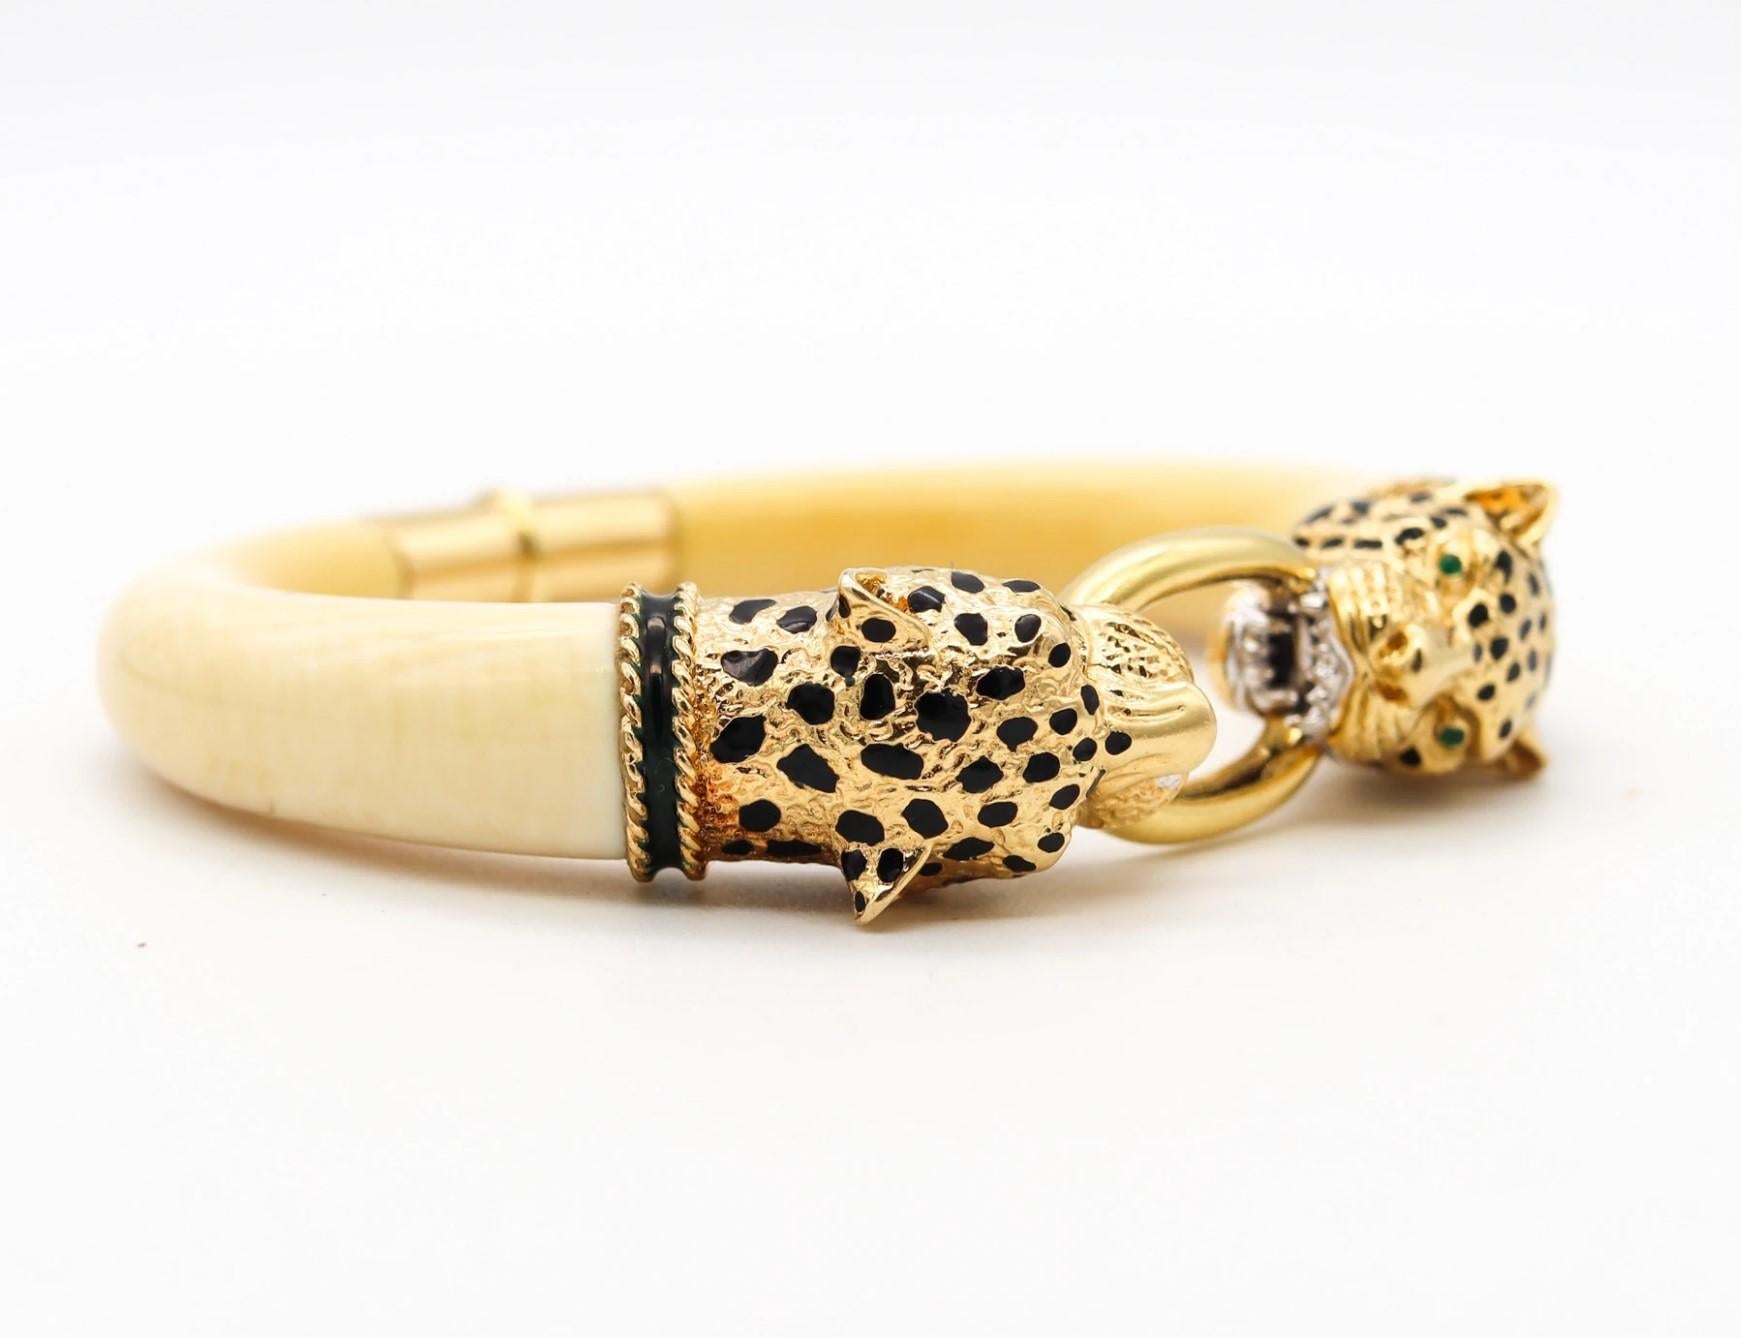 Modernist Gay Freres 1970 France Enameled Leopards Bracelet In 18Kt Gold Emeralds & Coral